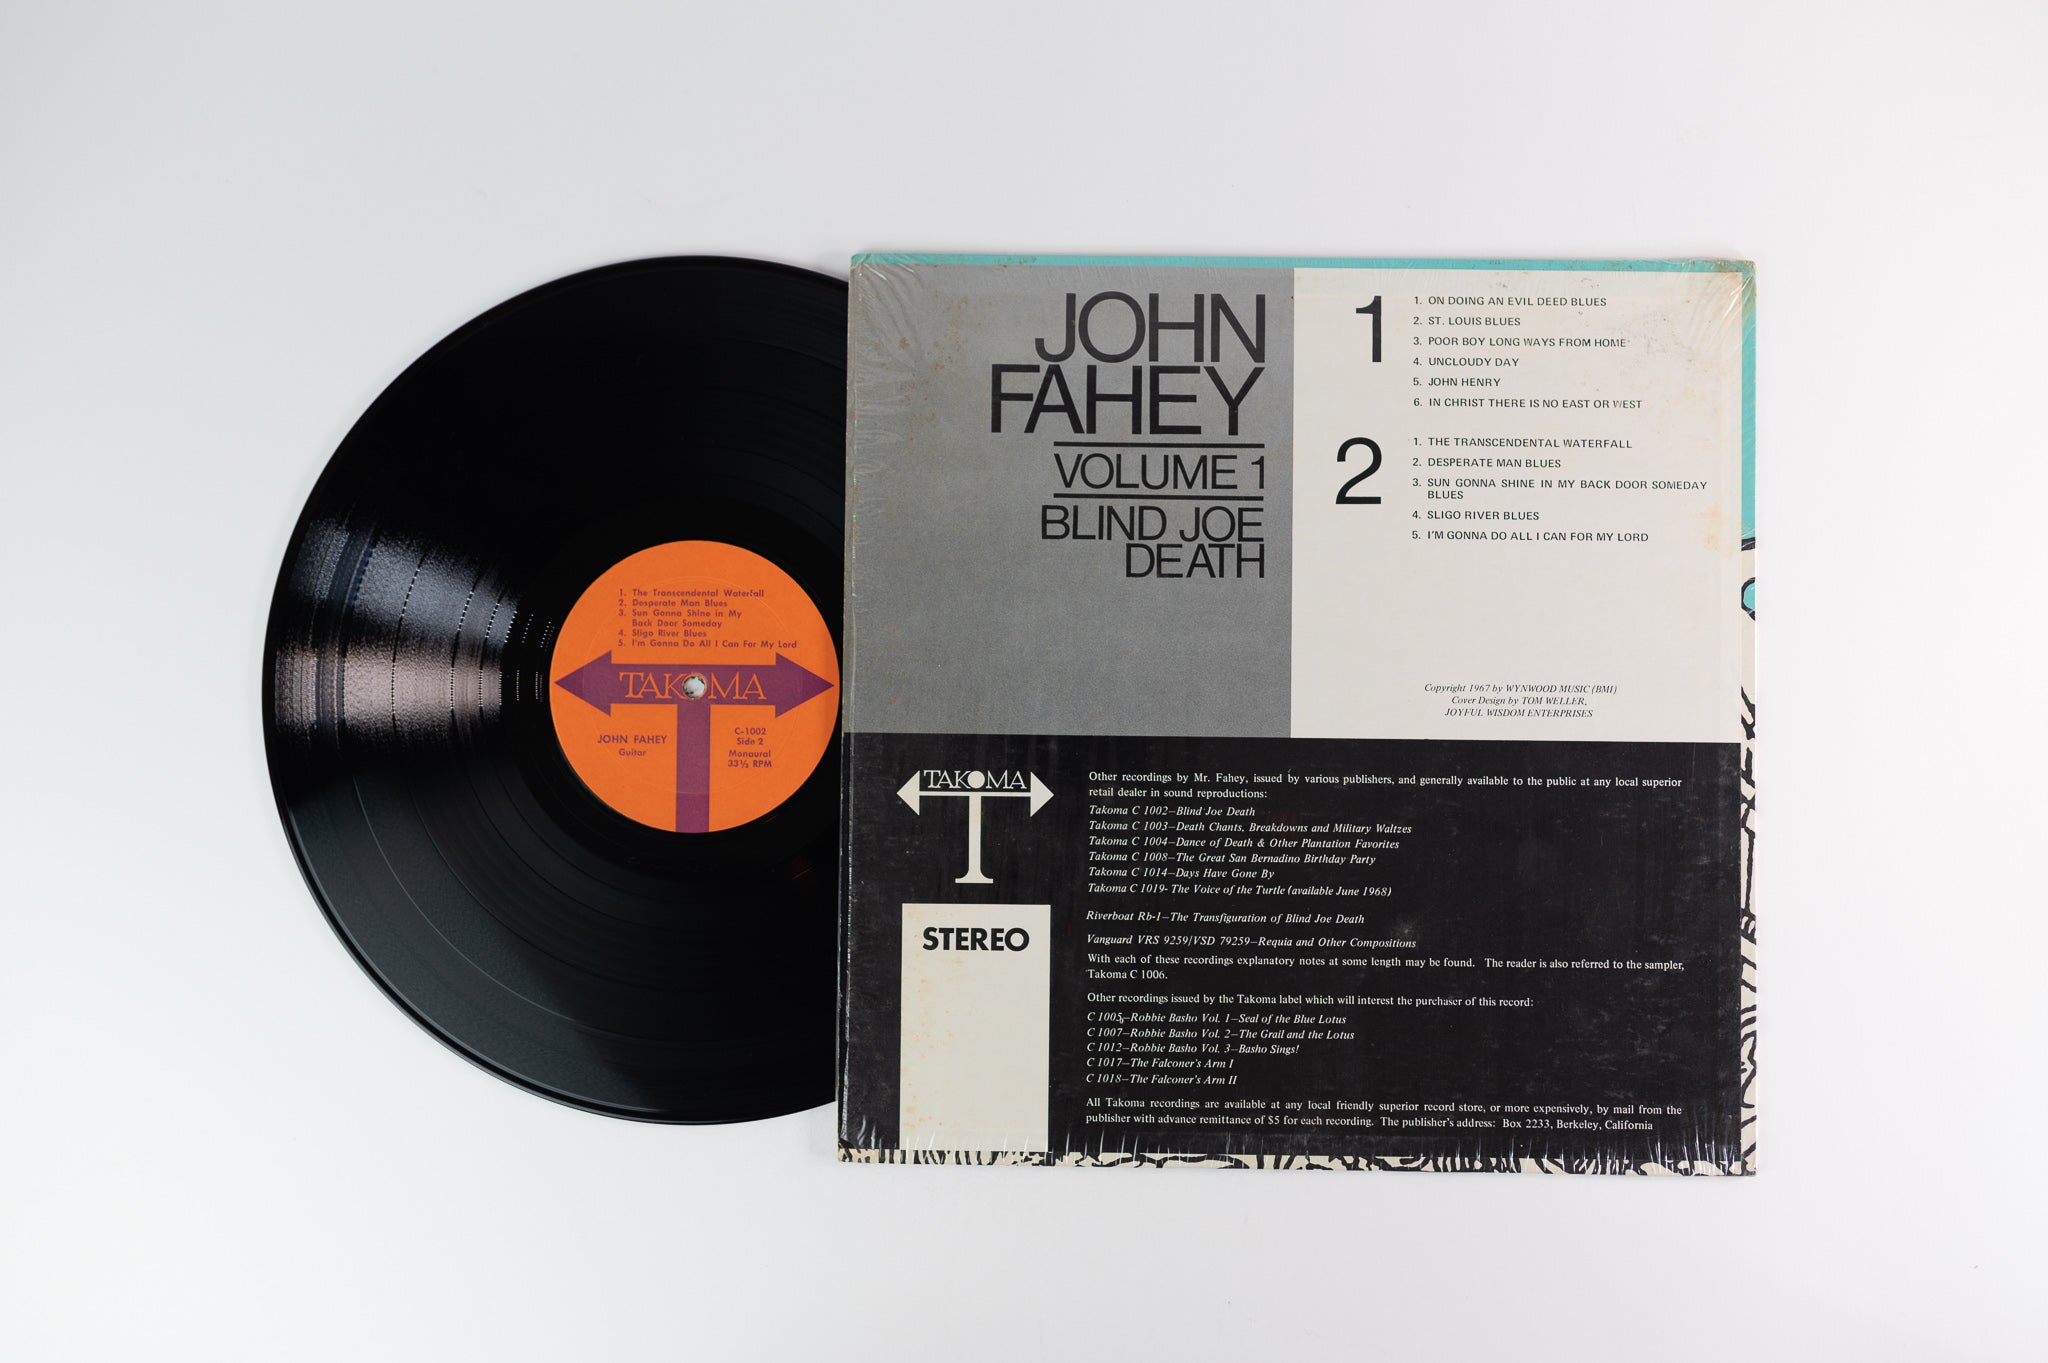 John Fahey - Volume 1 / Blind Joe Death on Takoma - Mono